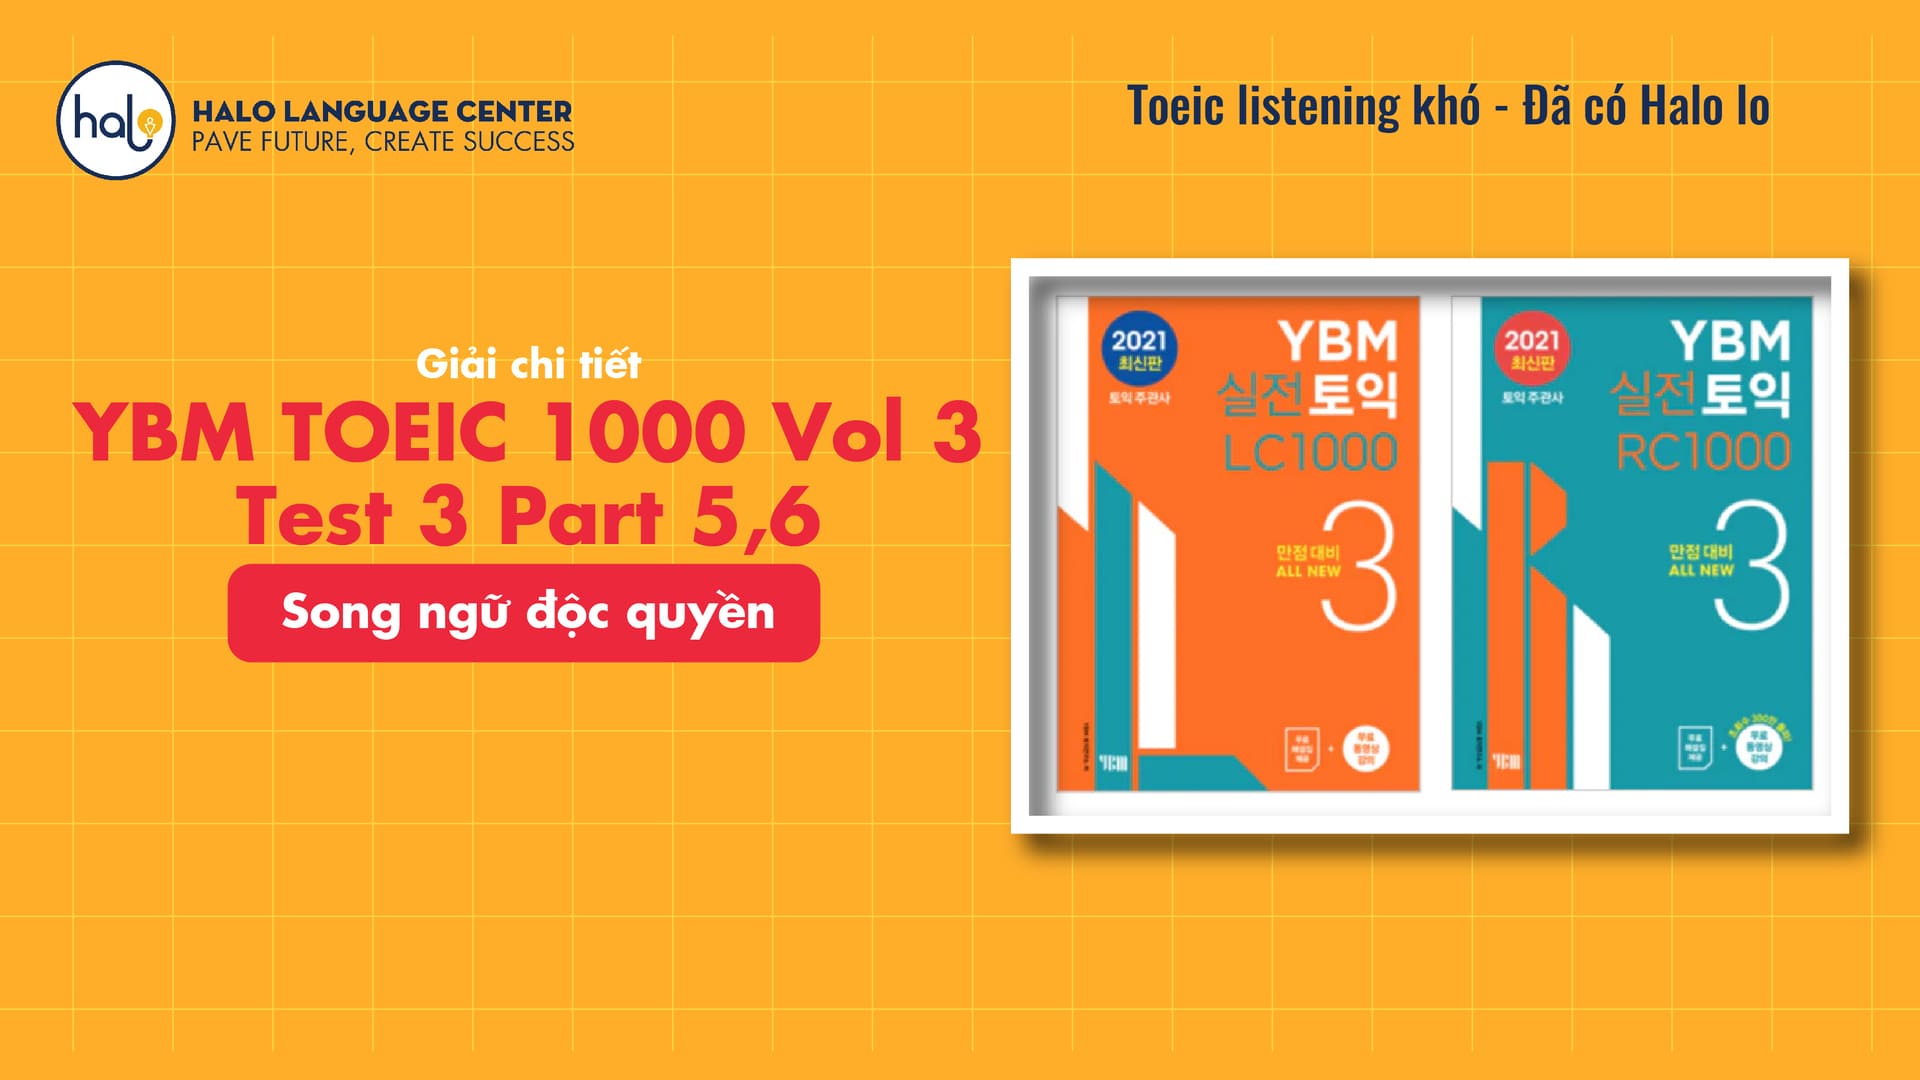 Giải chi tiết YBM TOEIC 1000 Vol 3 Test 3 Part 5,6 Song Ngữ Độc Quyền